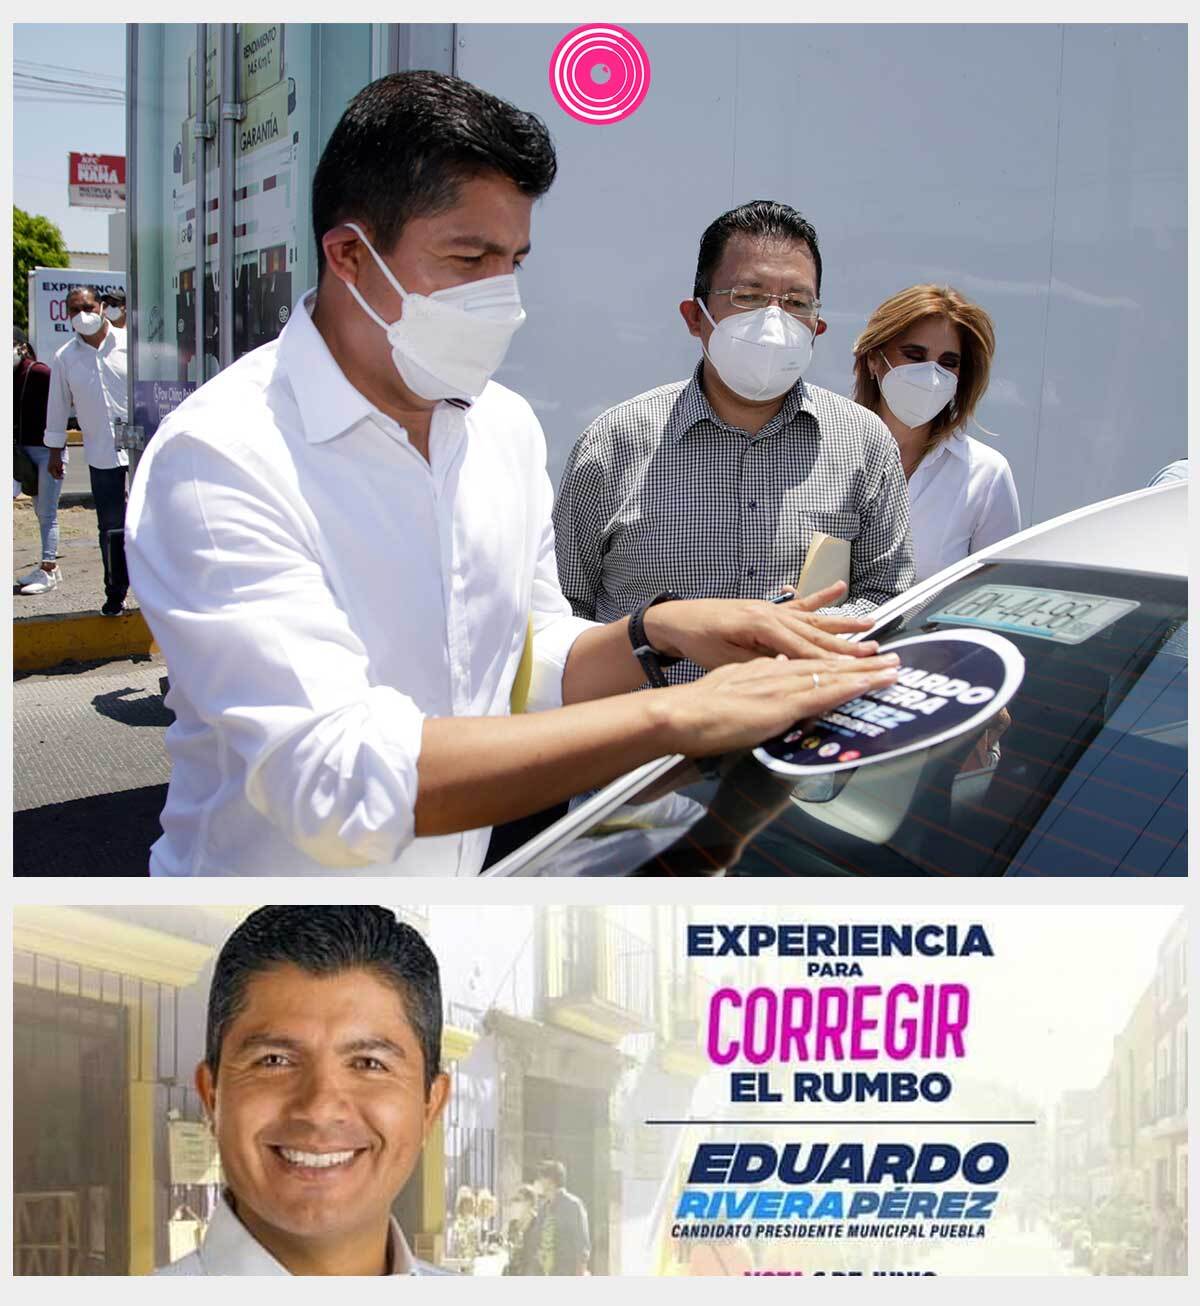 Eduardo Rivera, candidato de PRIANRD a la alcaldía de Puebla, usa el eslogan “Experiencia corregir el rumbo”